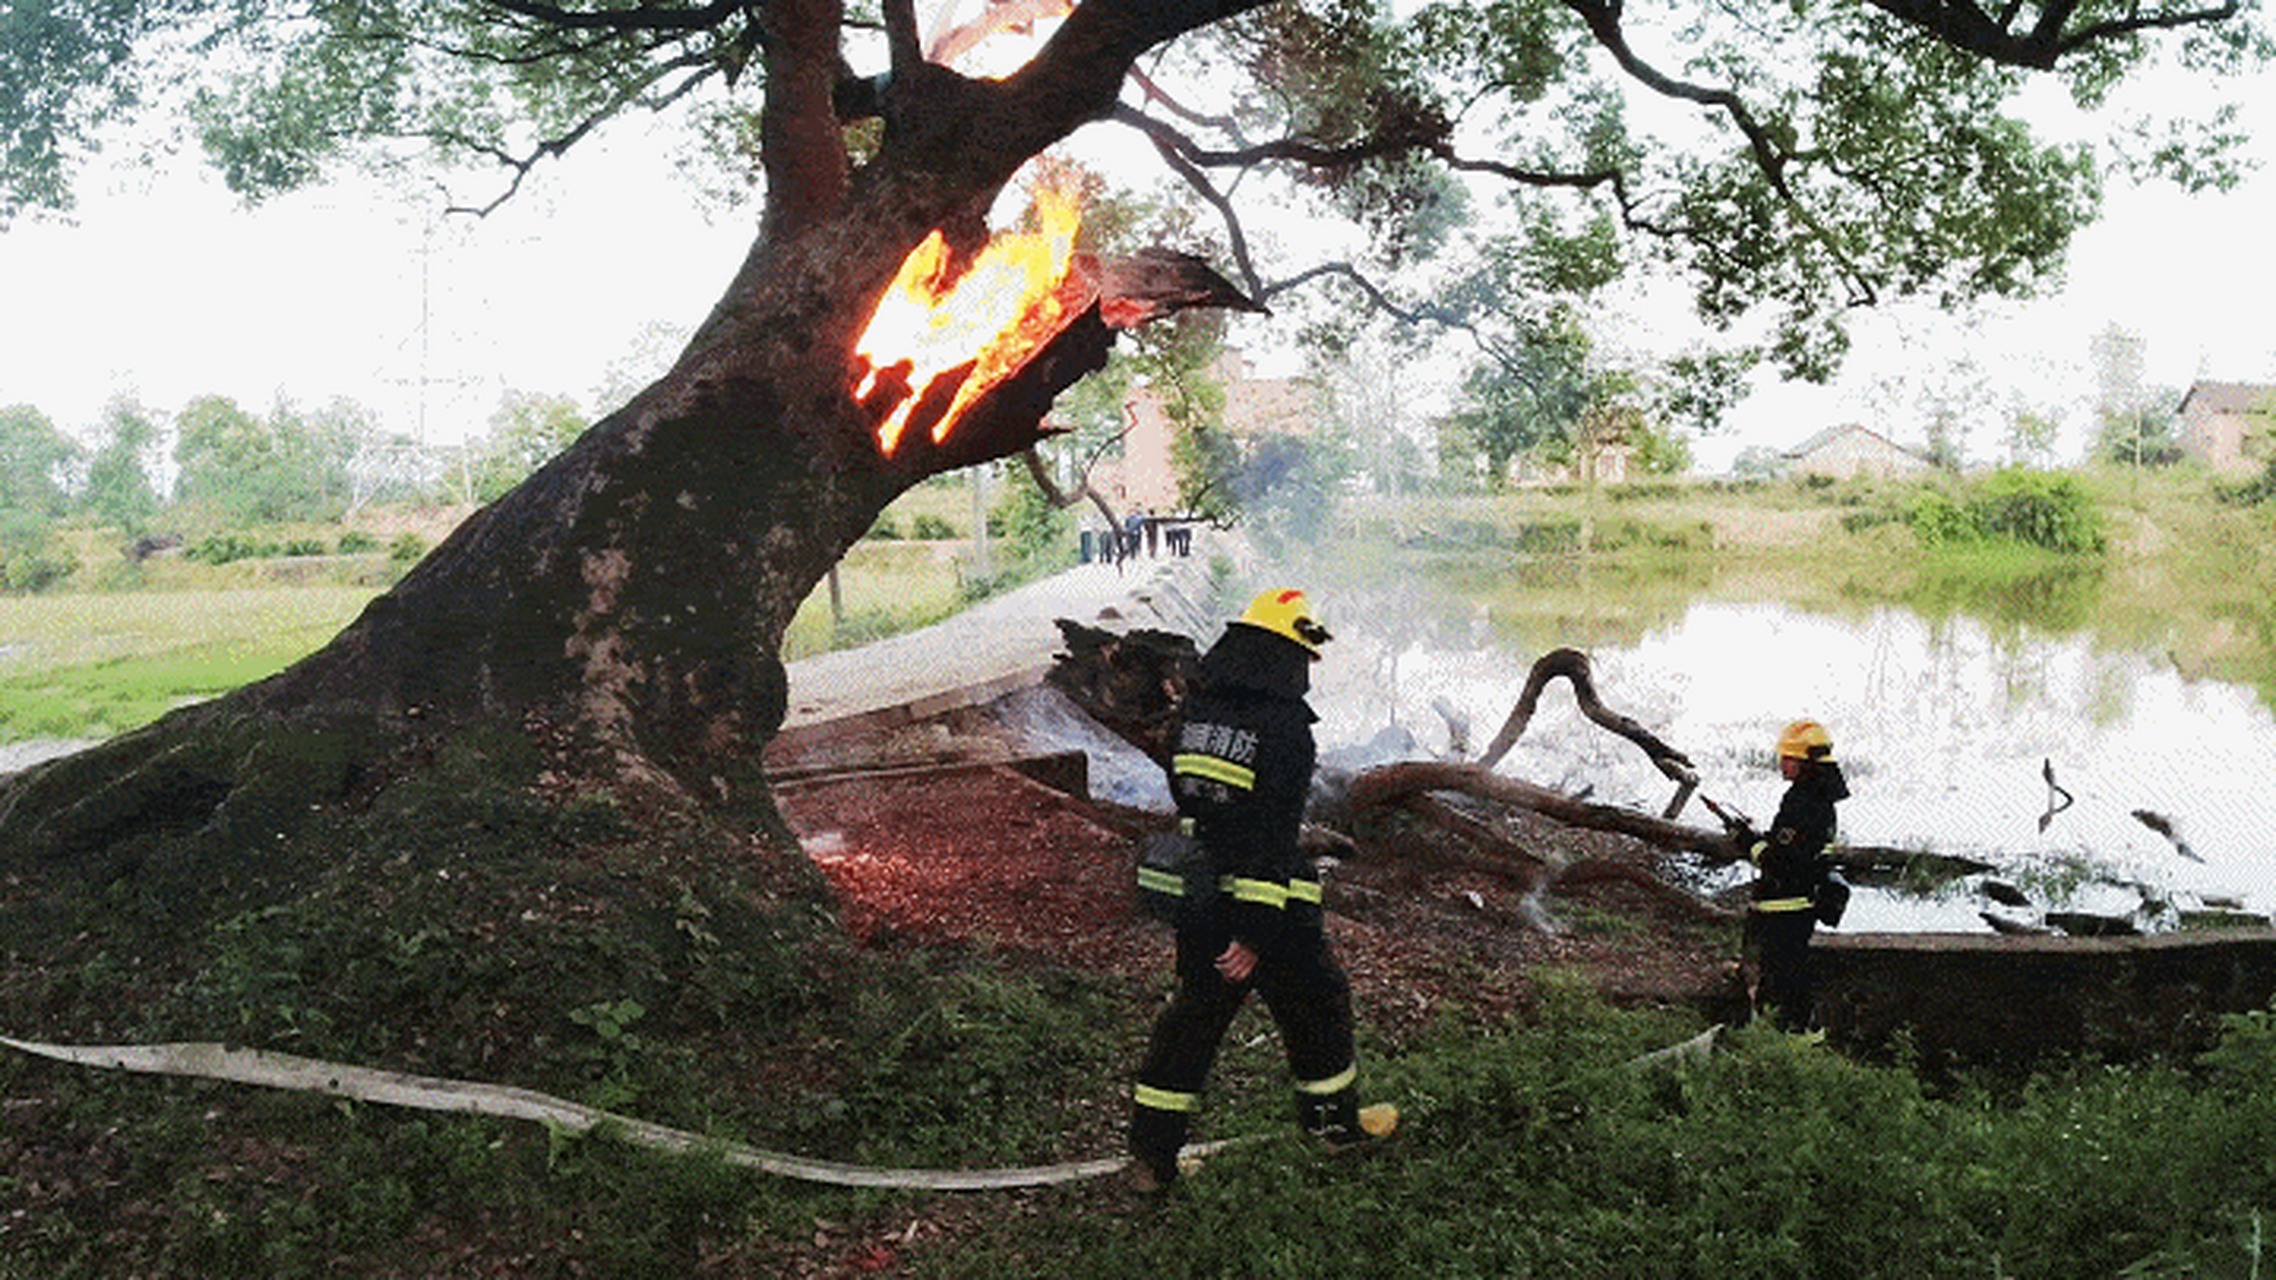 湖南衡阳,常宁市烟洲镇,一棵四百多年的古树突然间说火就火了